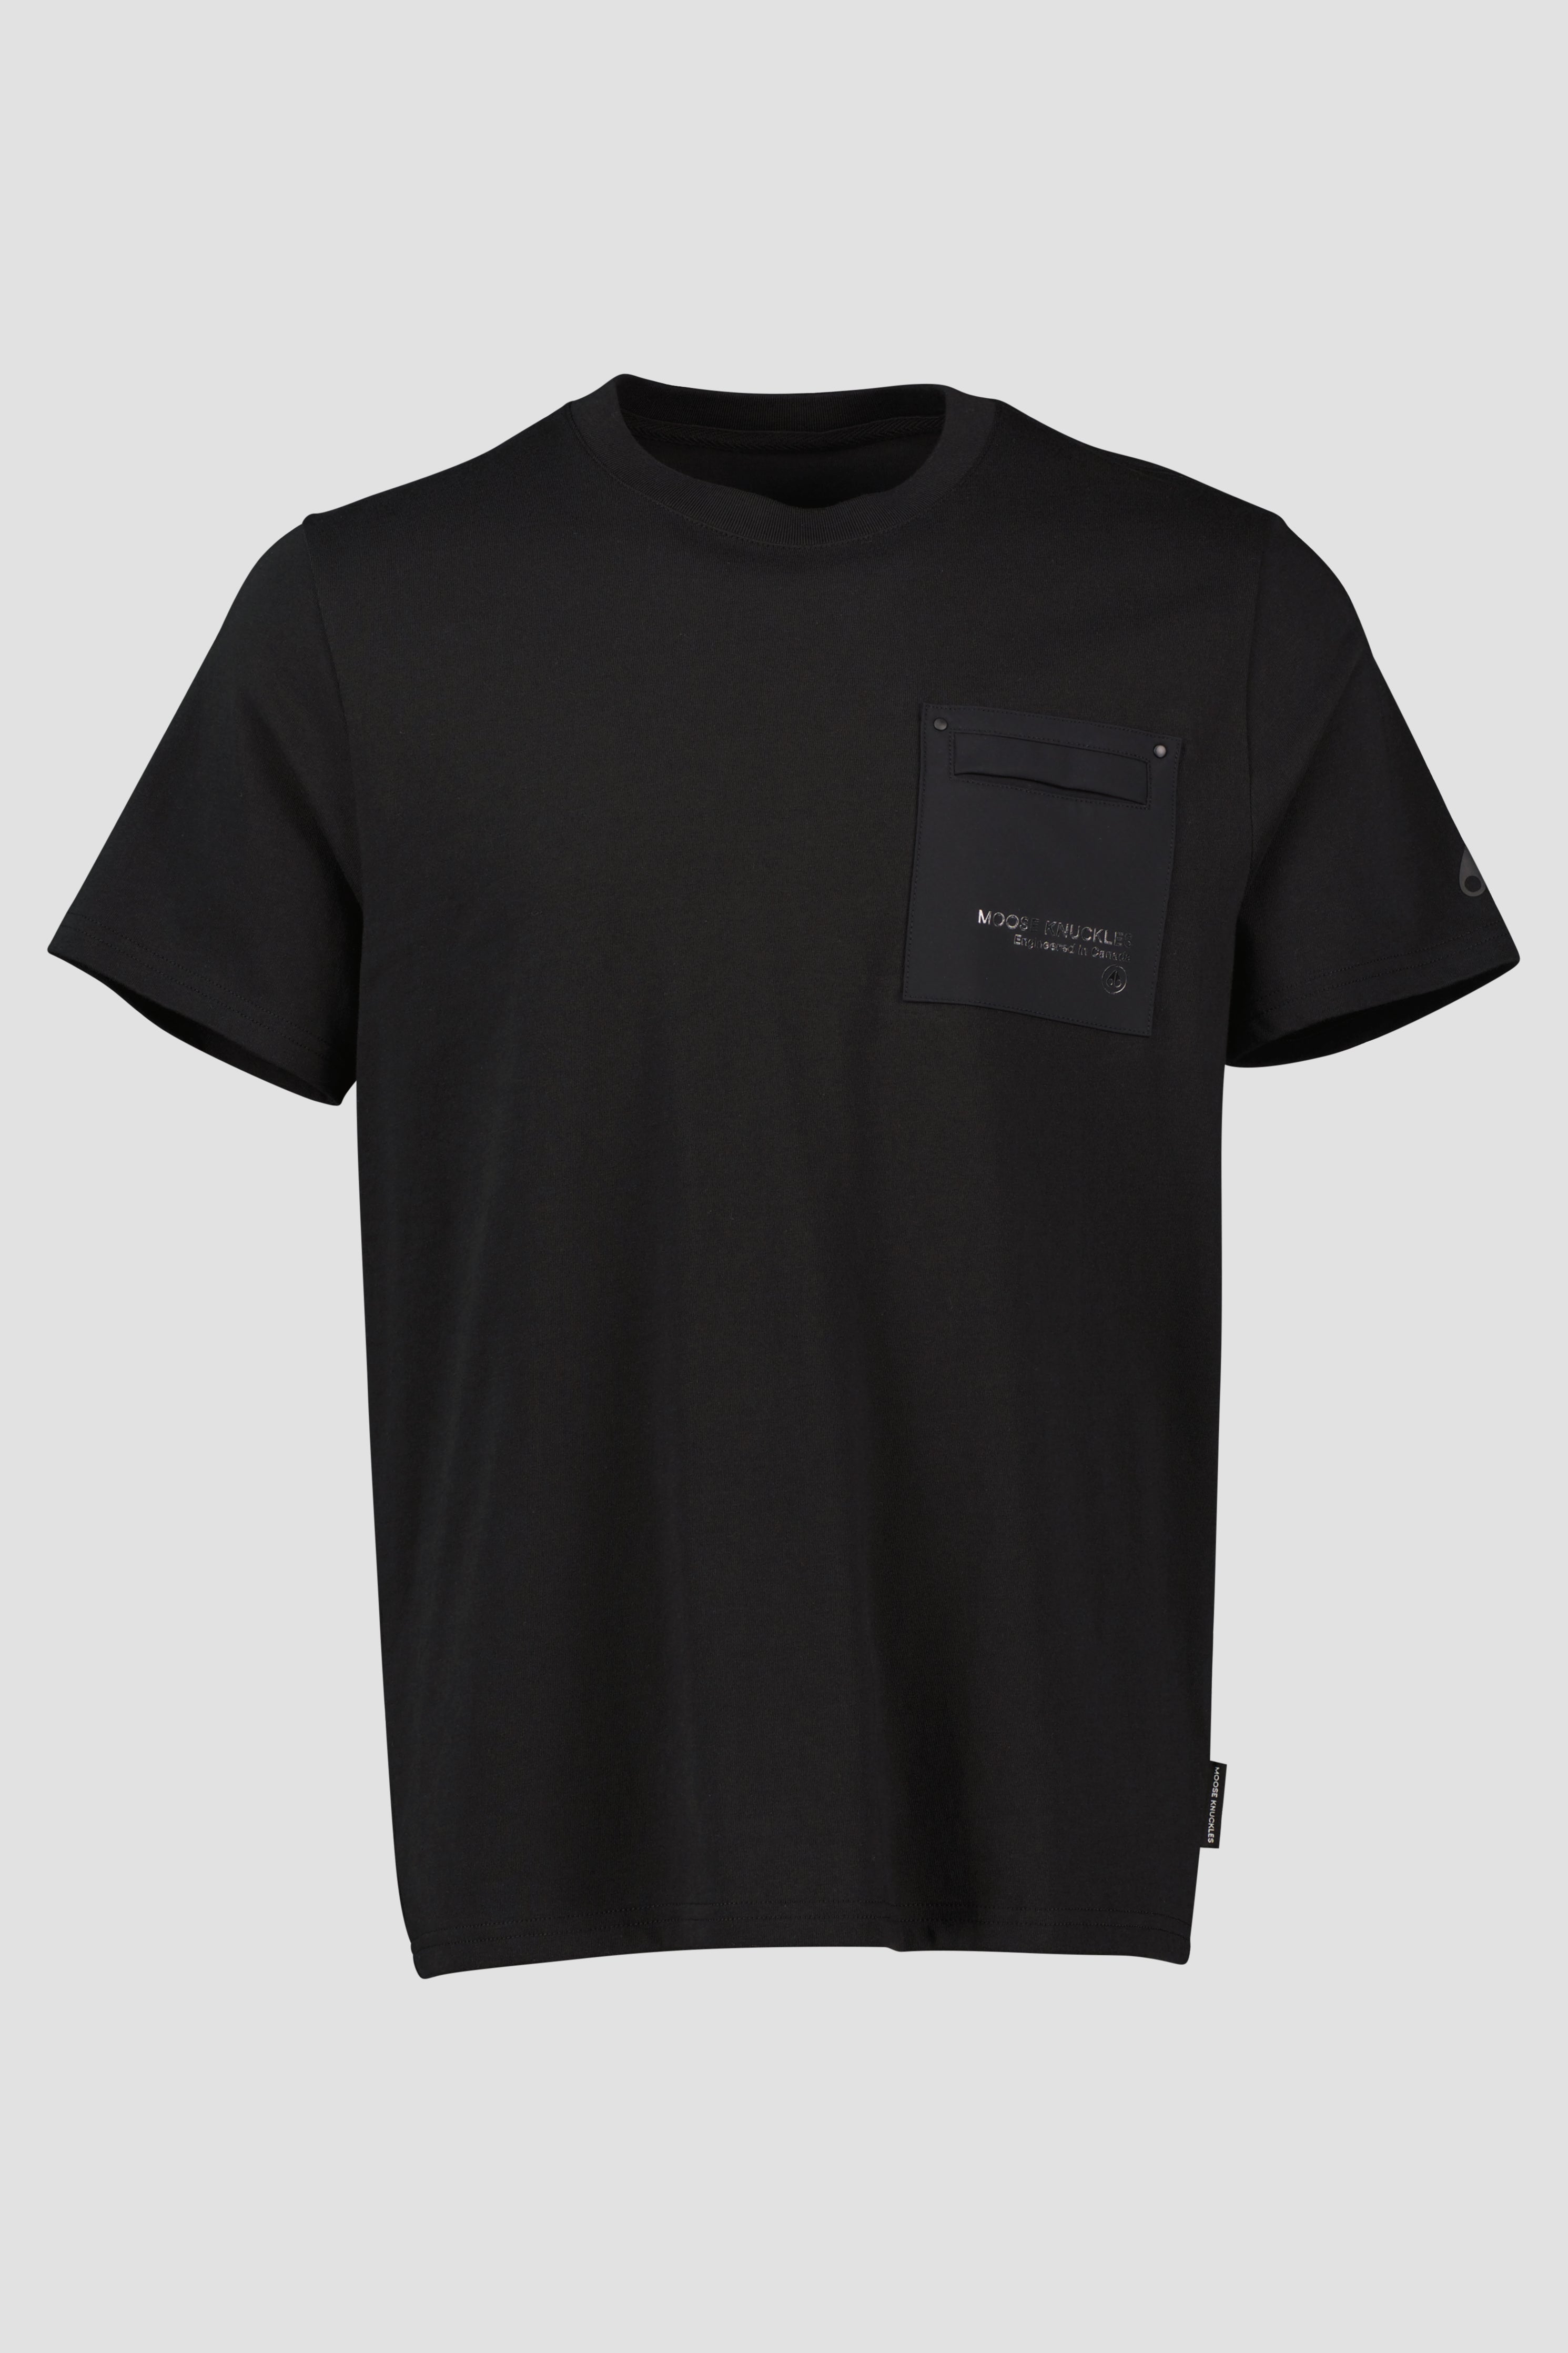 Men's Moose Knuckles Black Dalon Chest Logo T Shirt